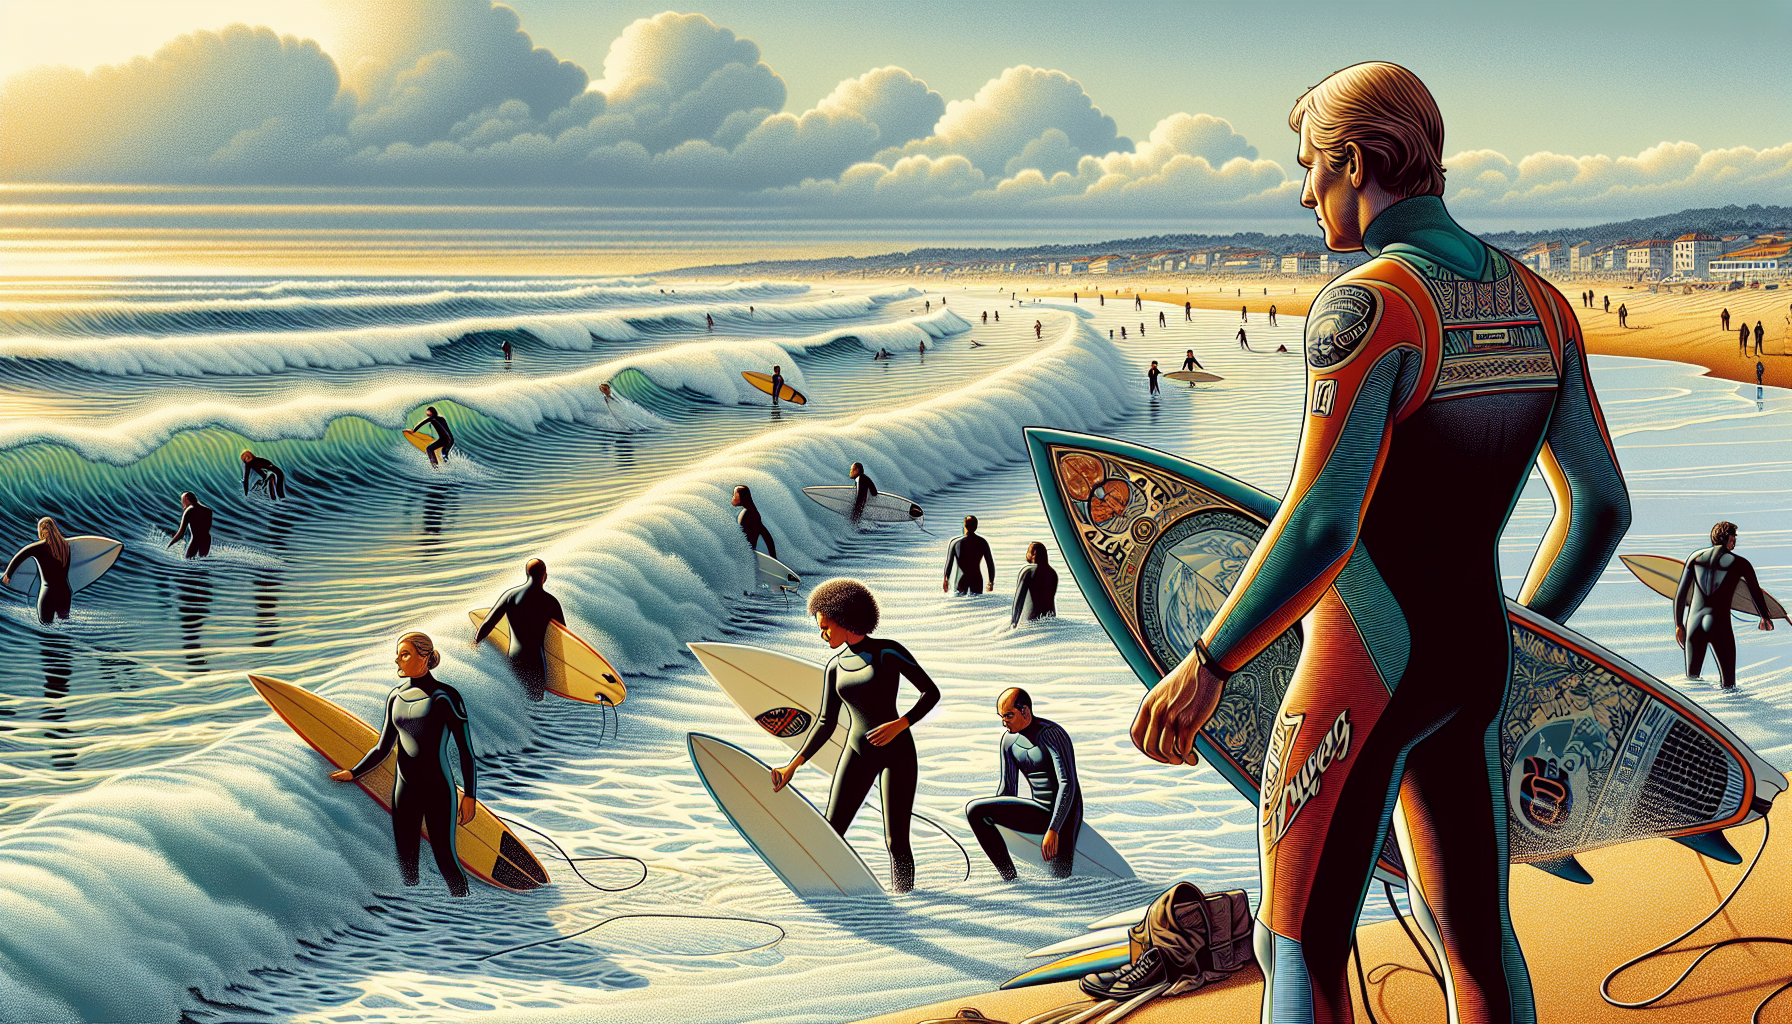 Relatório de Surf Matosinhos: Previsão e Condições Atualizadas Diariamente